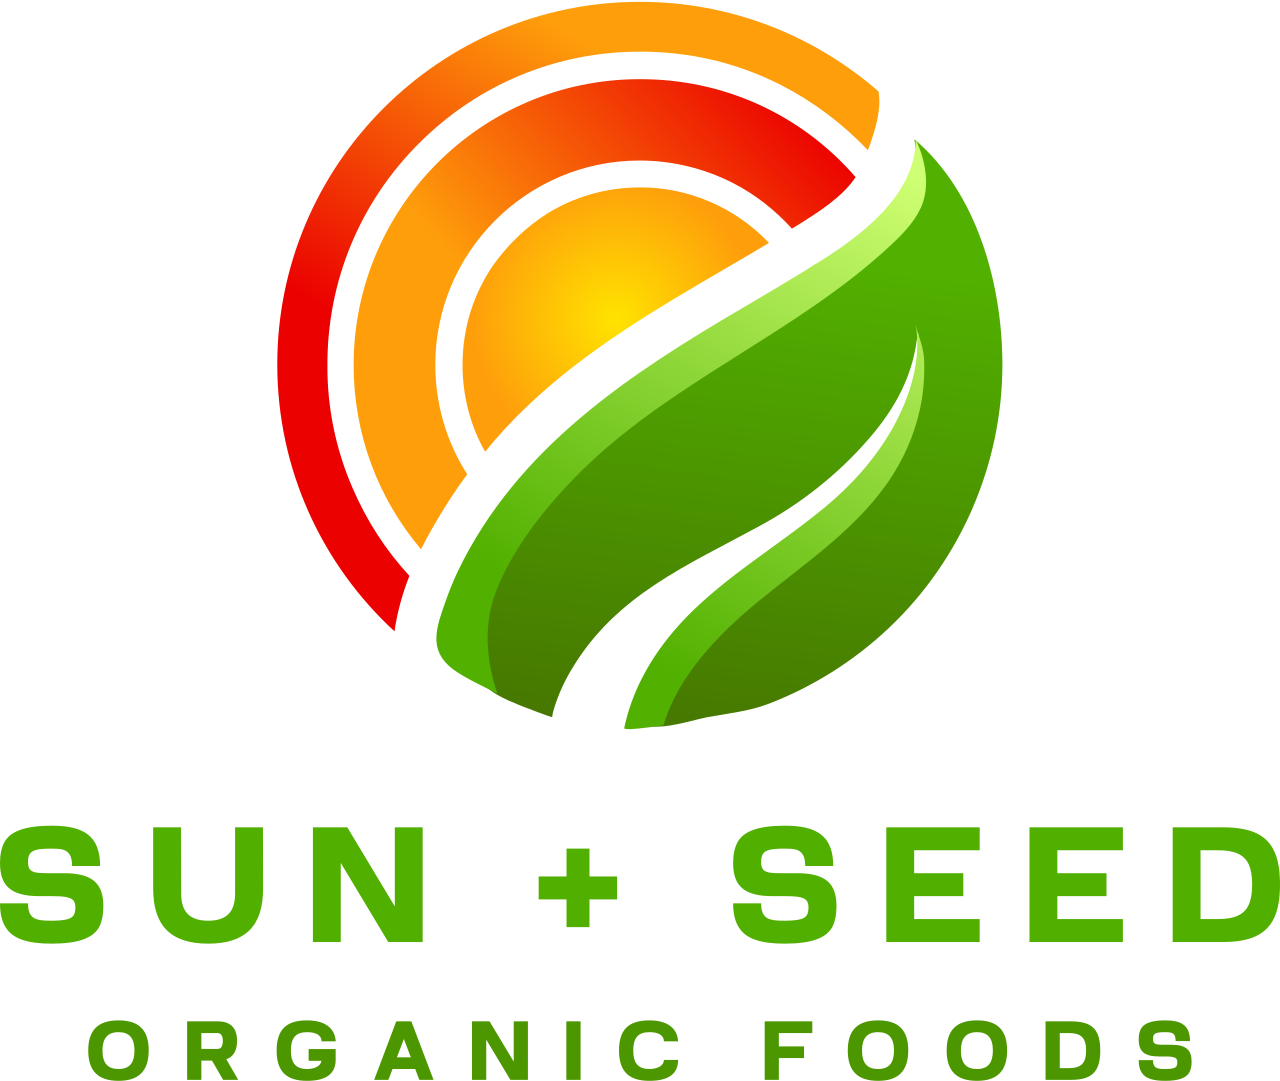 Sun + Seed's logo